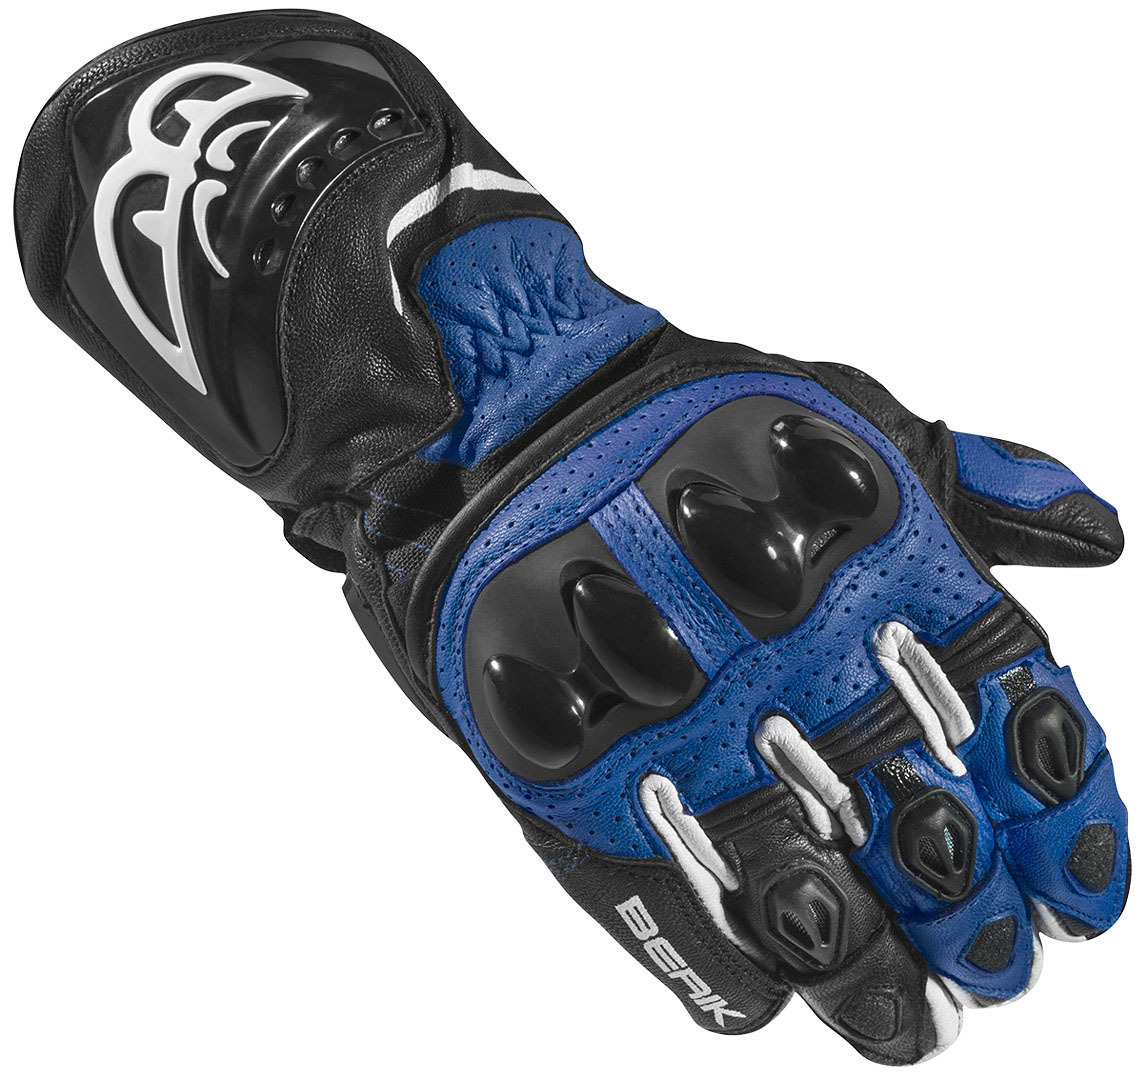 Мотоциклетные перчатки Berik Spa Evo с длинными манжетами, черный/синий мотоциклетные перчатки spa evo berik черный